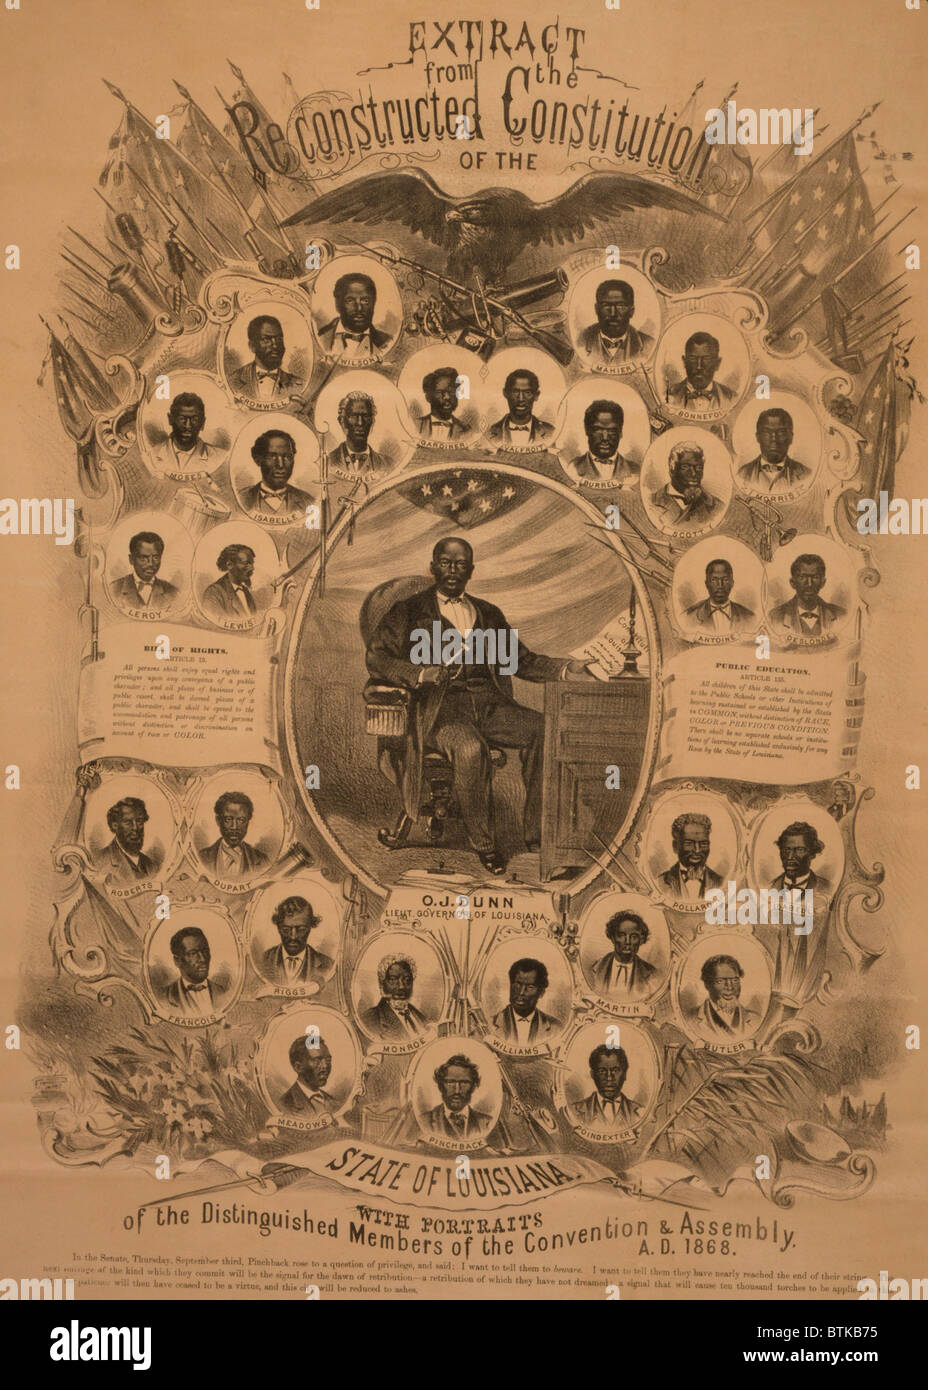 1868 Festschrift Fotocollage von politisch aktiven Afro-Amerikaner in Louisiana beim Wiederaufbau. Leutenant Gouverneur, Oscar J. Dunn, liegt im Zentrum, umgeben von Porträts von neunundzwanzig Porträts von afrikanischen amerikanischen Delegierten der verfassungsgebenden Versammlung von Louisiana. Stockfoto